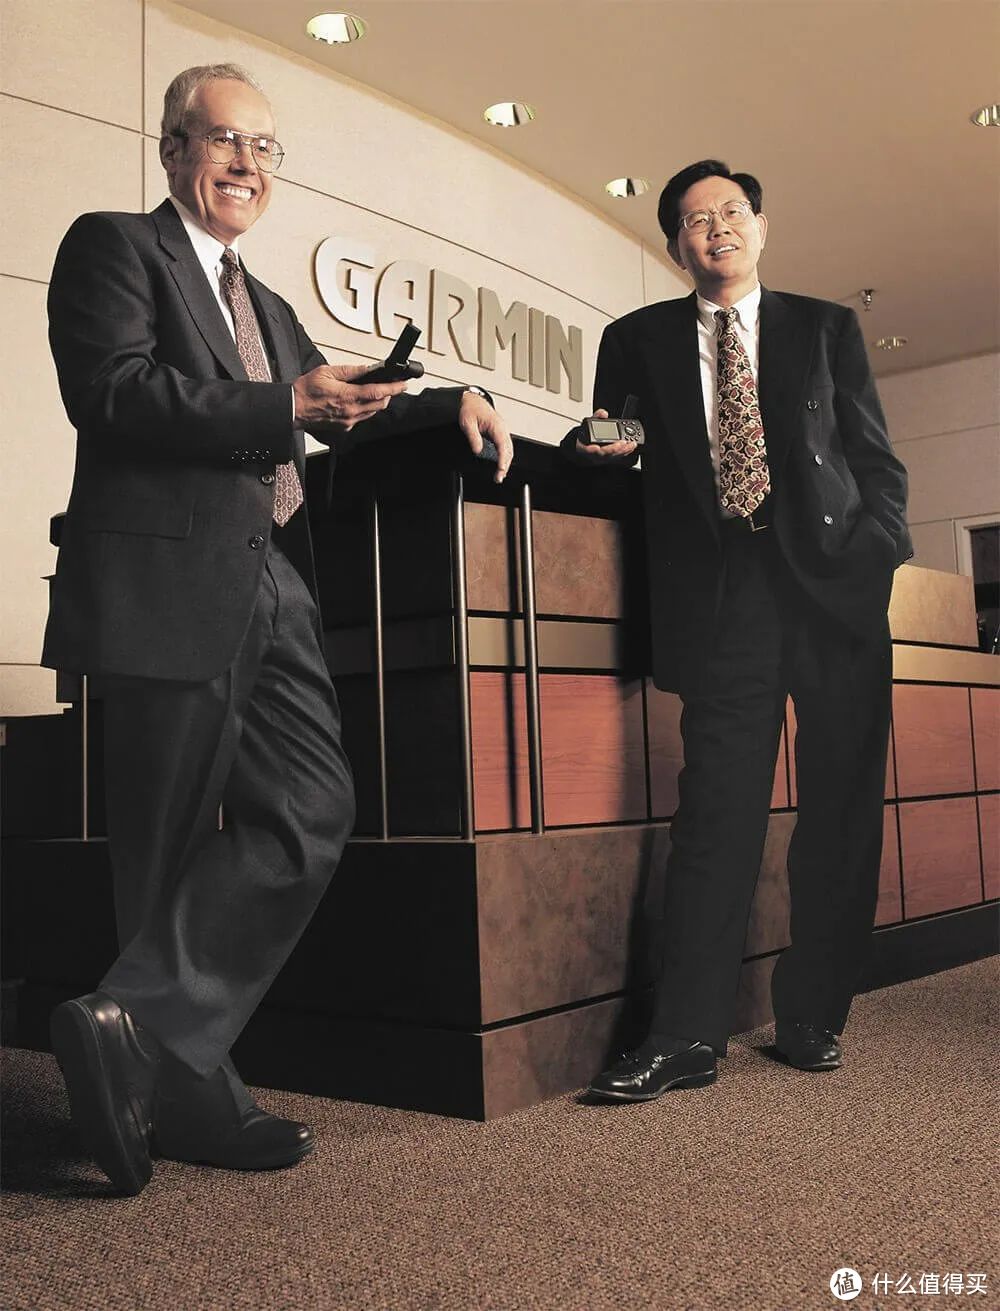 两位创始人名字Gary和Min合并成Garmin